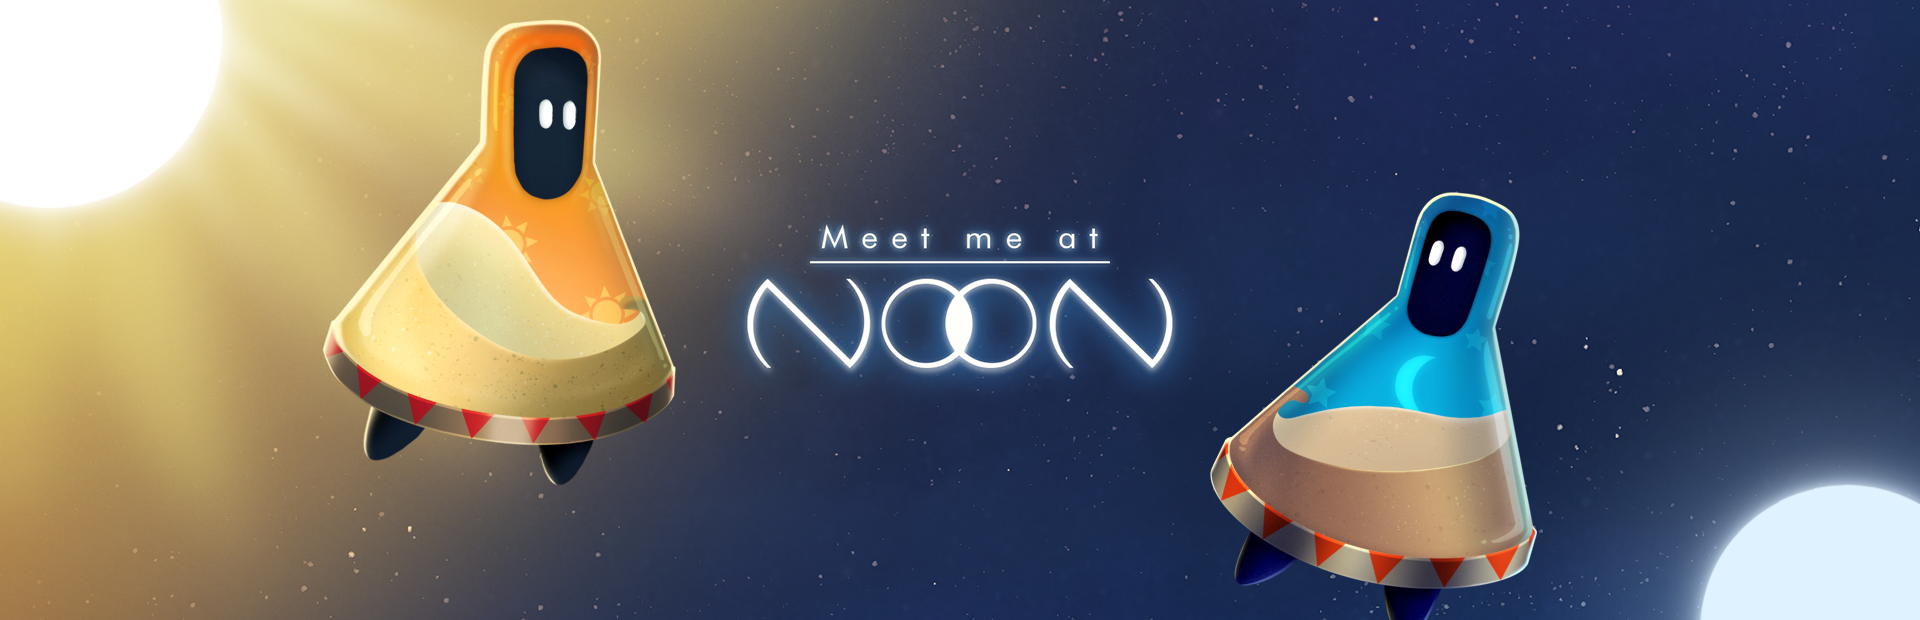 Meet me at NooN - free Web Demo